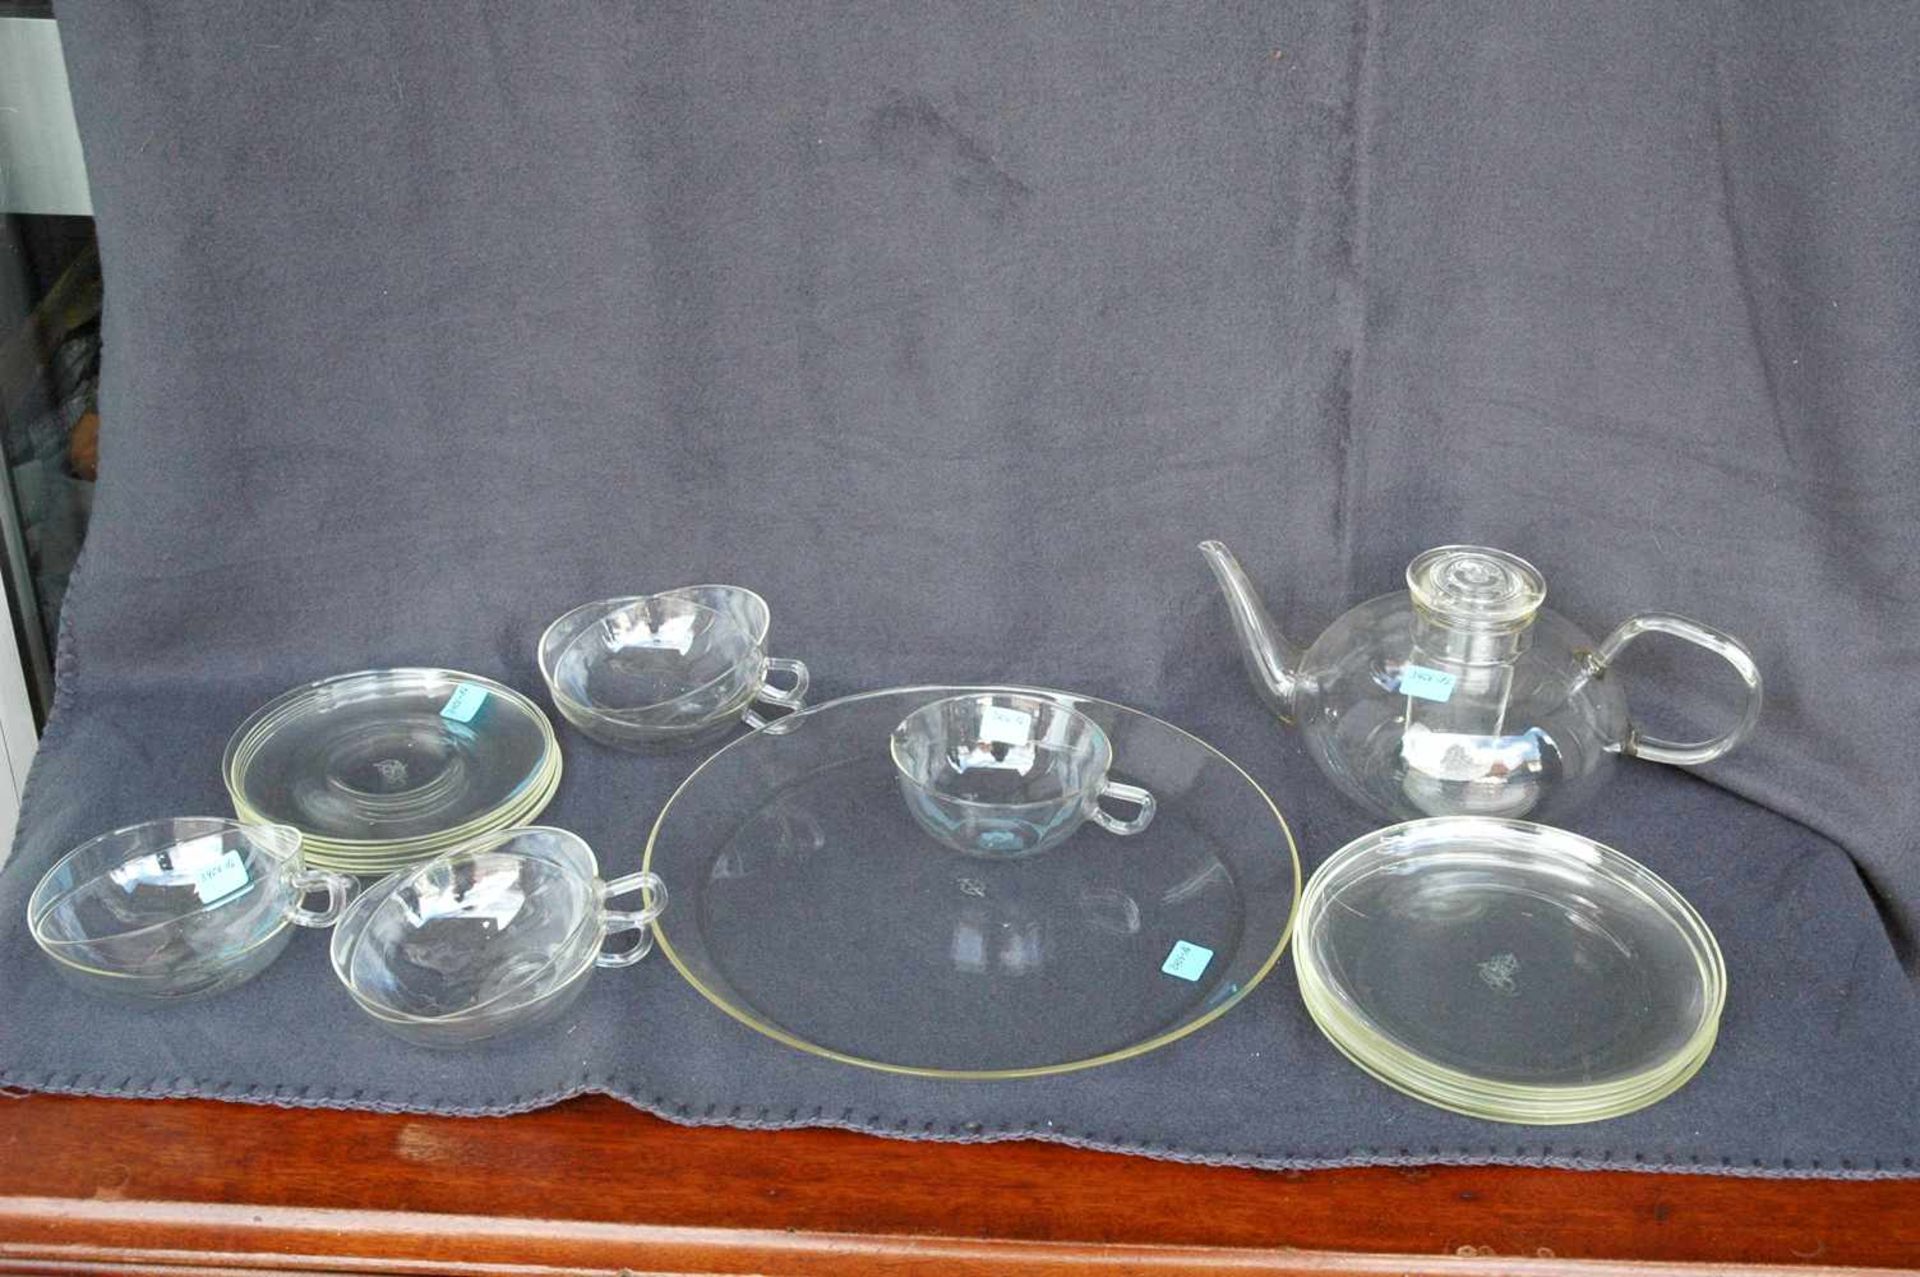 Saale-Glas: Teekanne, 6 Teetassen mit Untertassen, Milchkännchen, Kuchenplatte, 1 Deckel